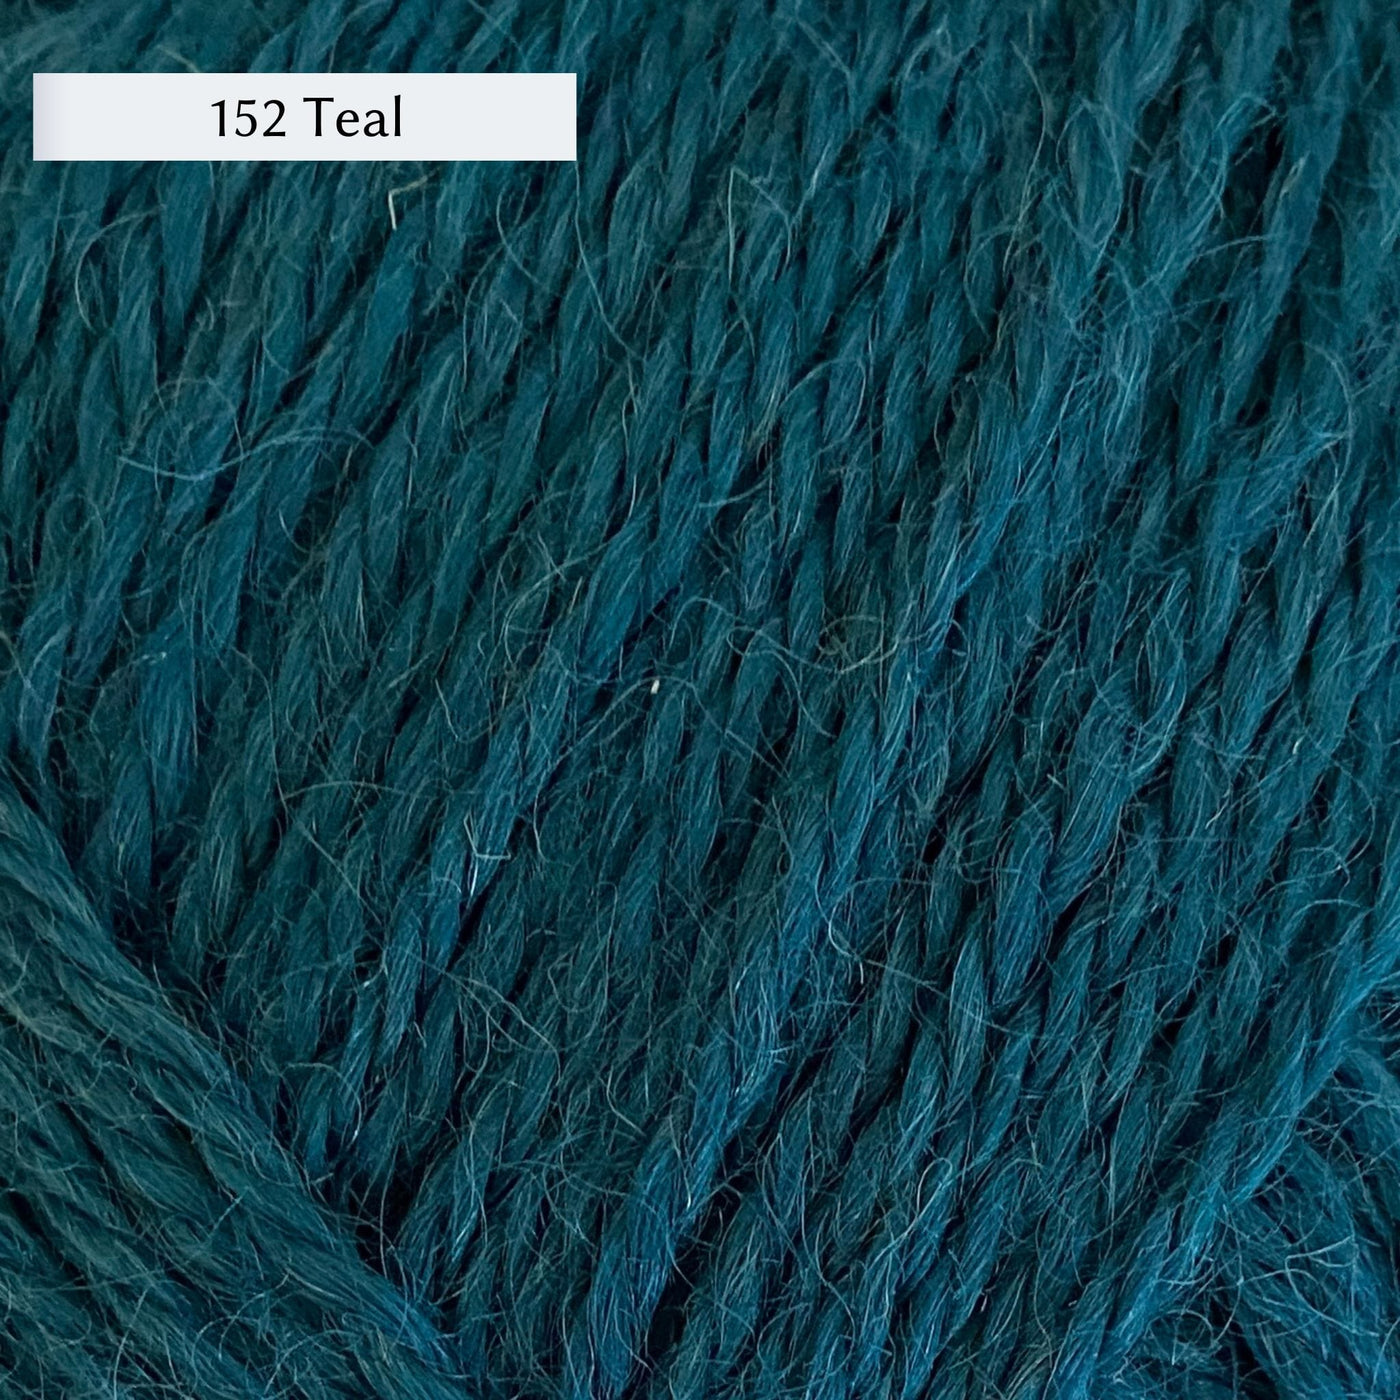 Wensleydale Longwool Aran, an aran weight yarn made from Wensleydale sheep, in color 152 Teal, a deep petrol teal